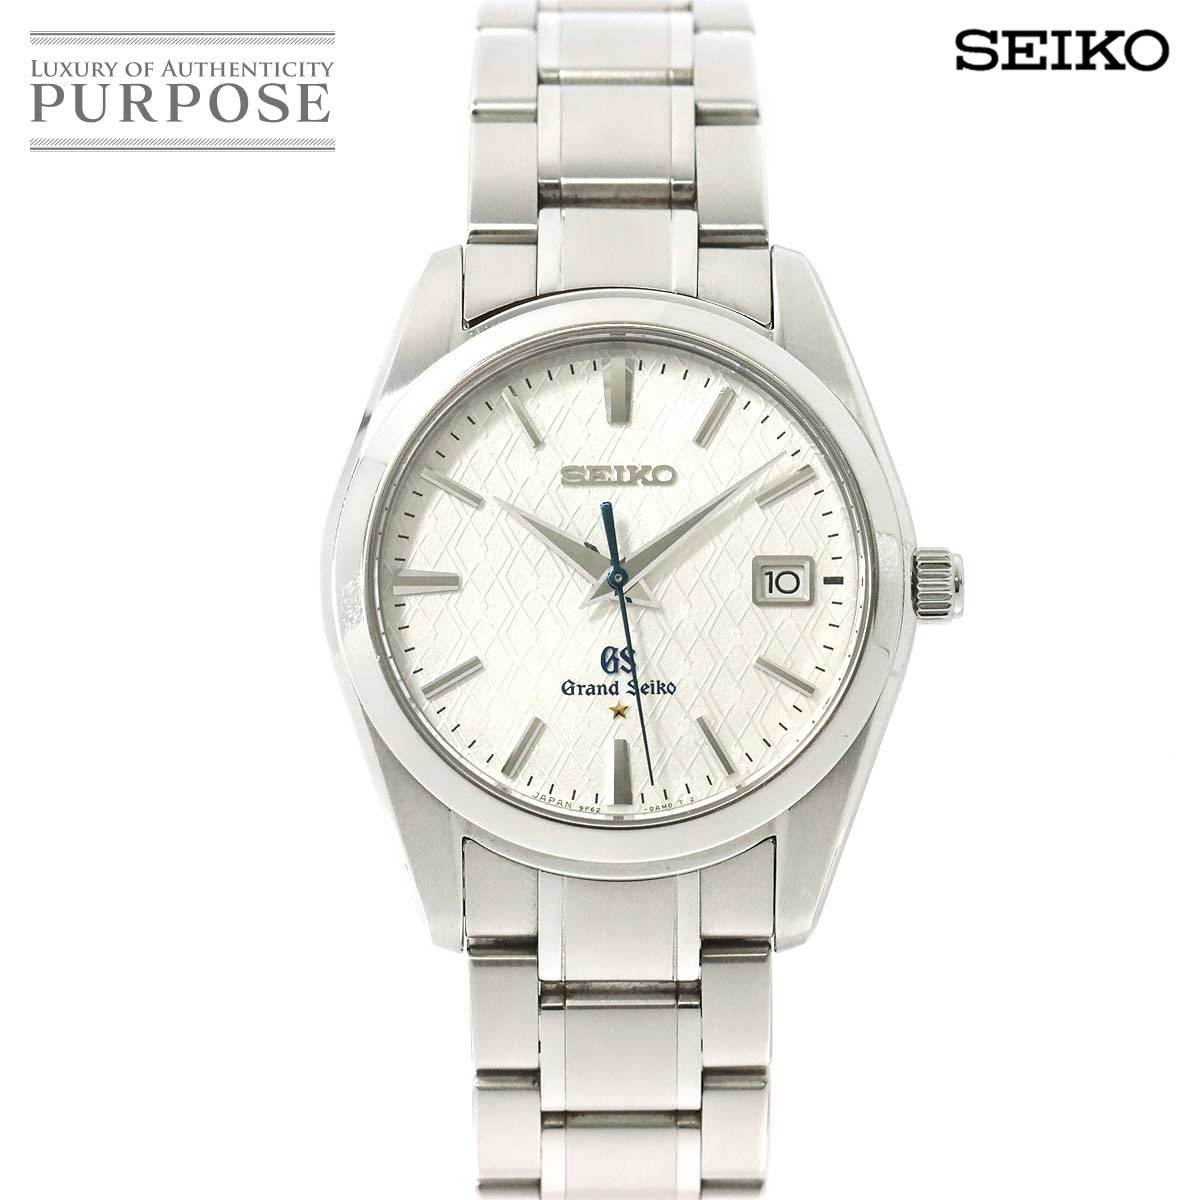 グランドセイコー GRAND SEIKO SBGX103 メンズ 腕時計 2000本限定 9F62 0AK0 デイト シルバー 文字盤 クォーツ ウォッチ 90176613